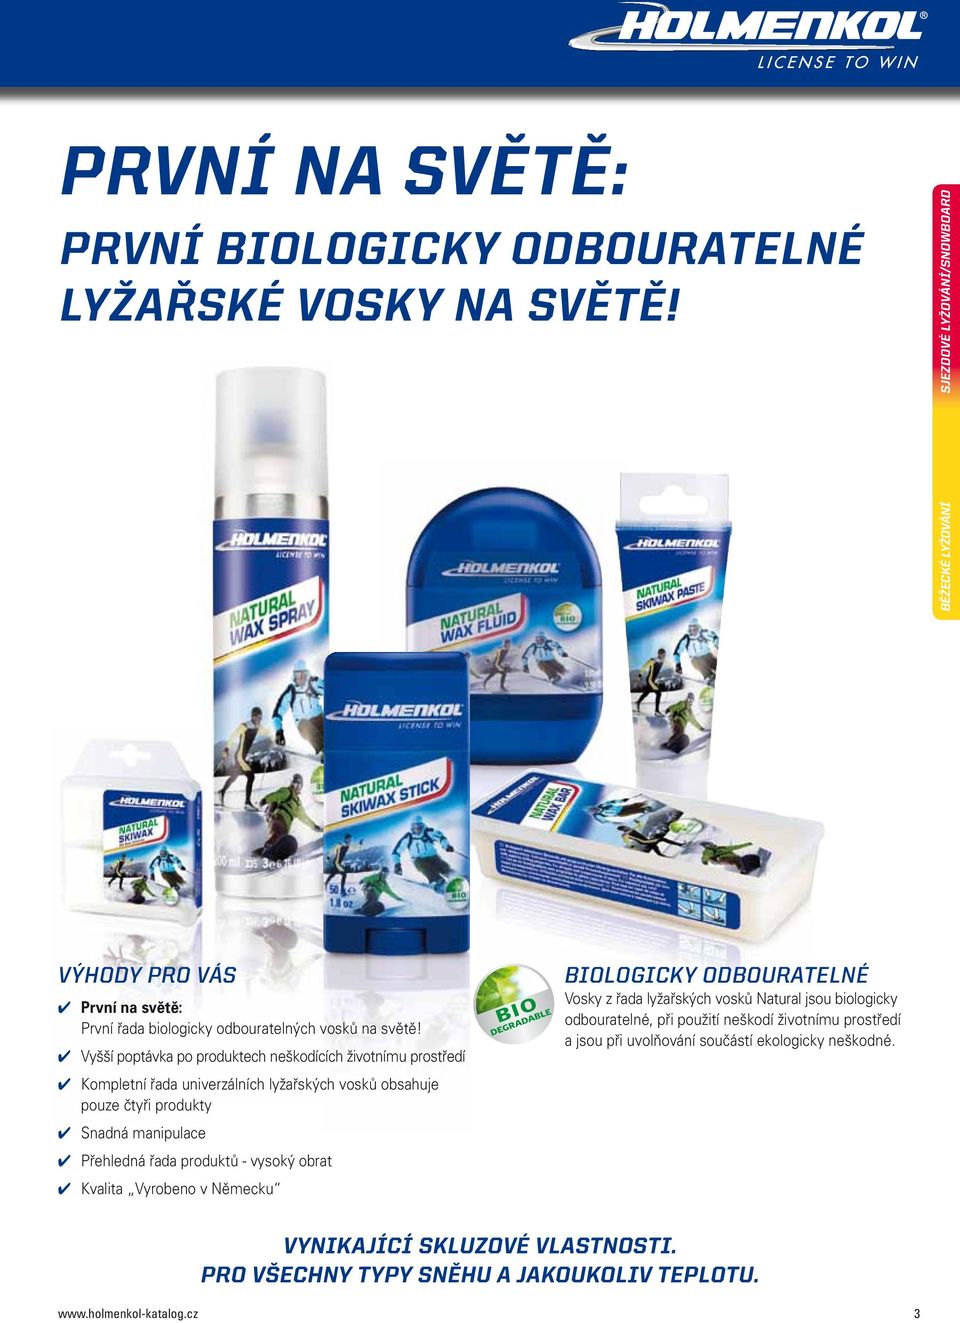 řada produktů - vysoký obrat Kvalita Vyrobeno v Německu Biologicky odbouratelné Vosky z řada lyžařských vosků Natural jsou biologicky odbouratelné, při použití